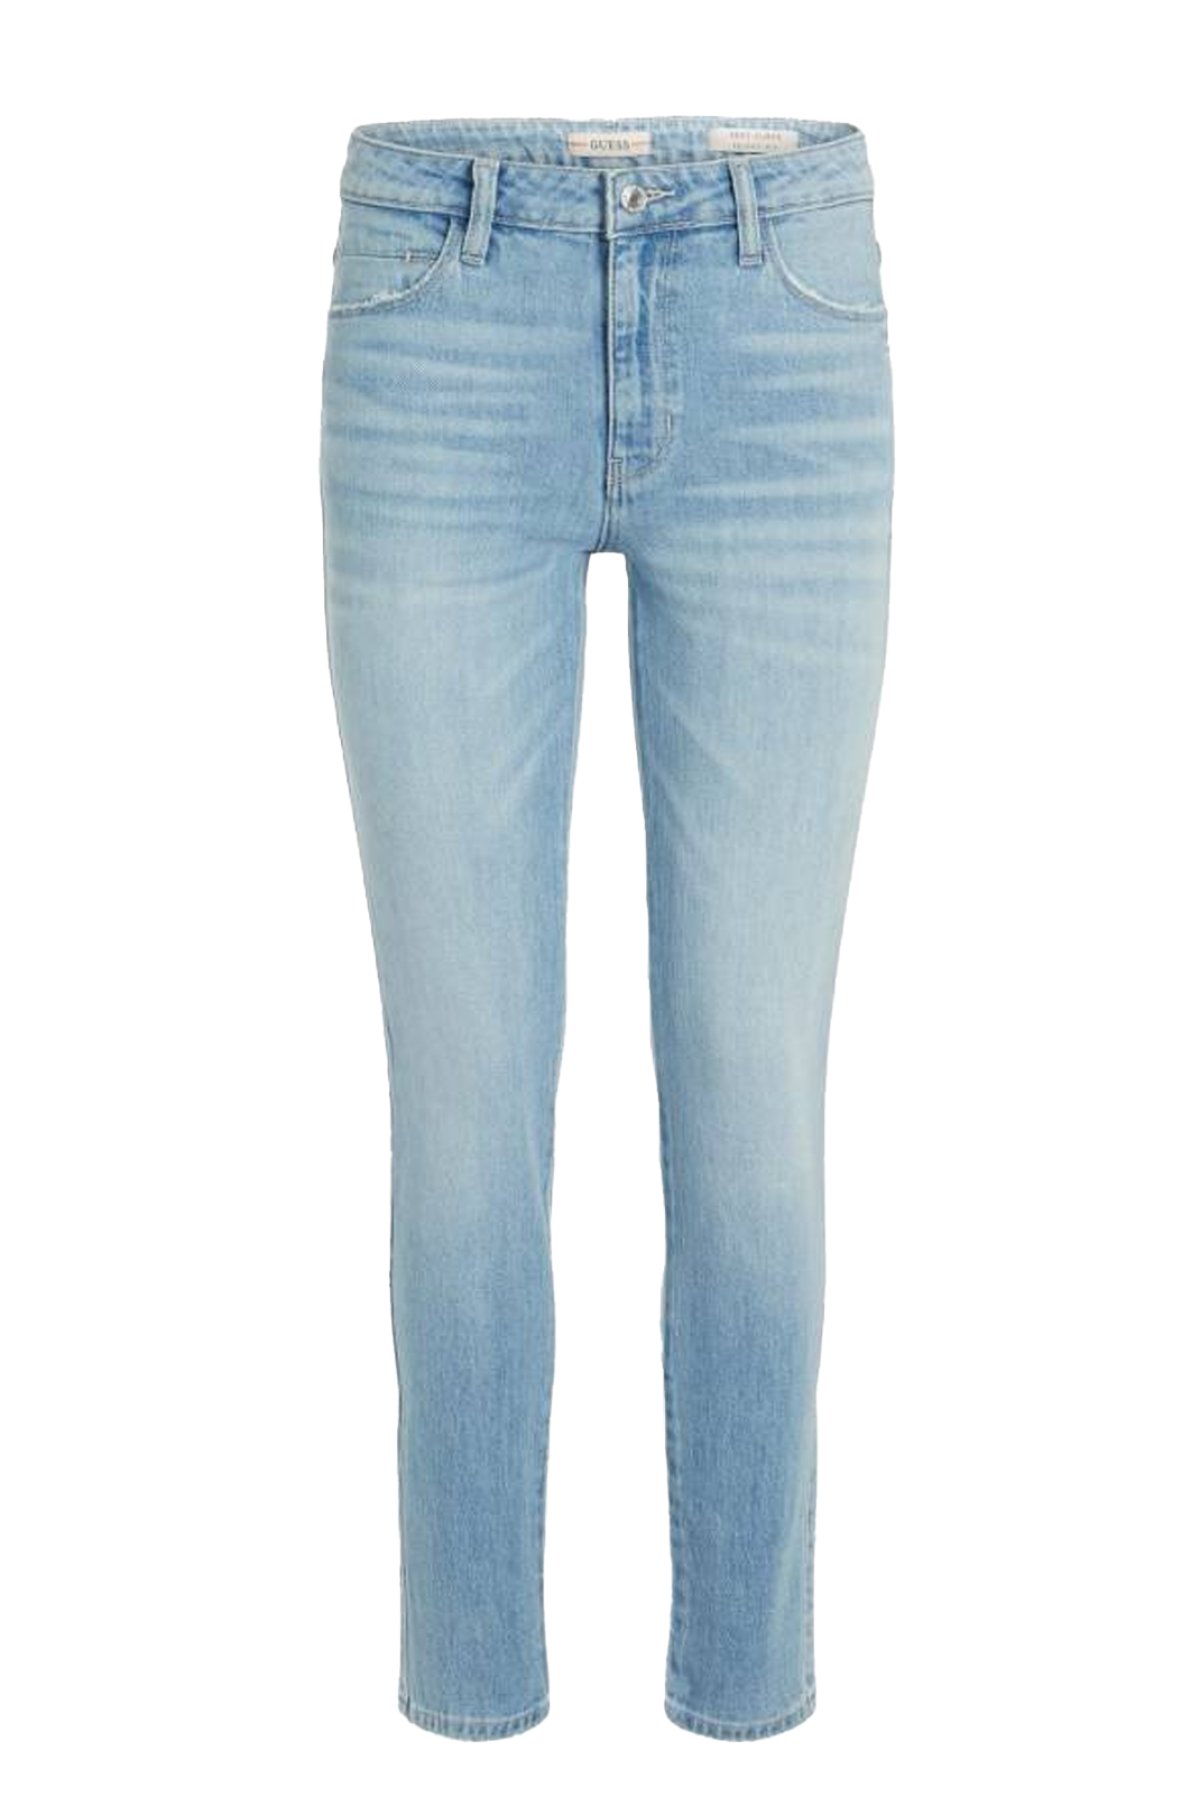 Guess Jeans W2GA21 D4MS1 džíny modré